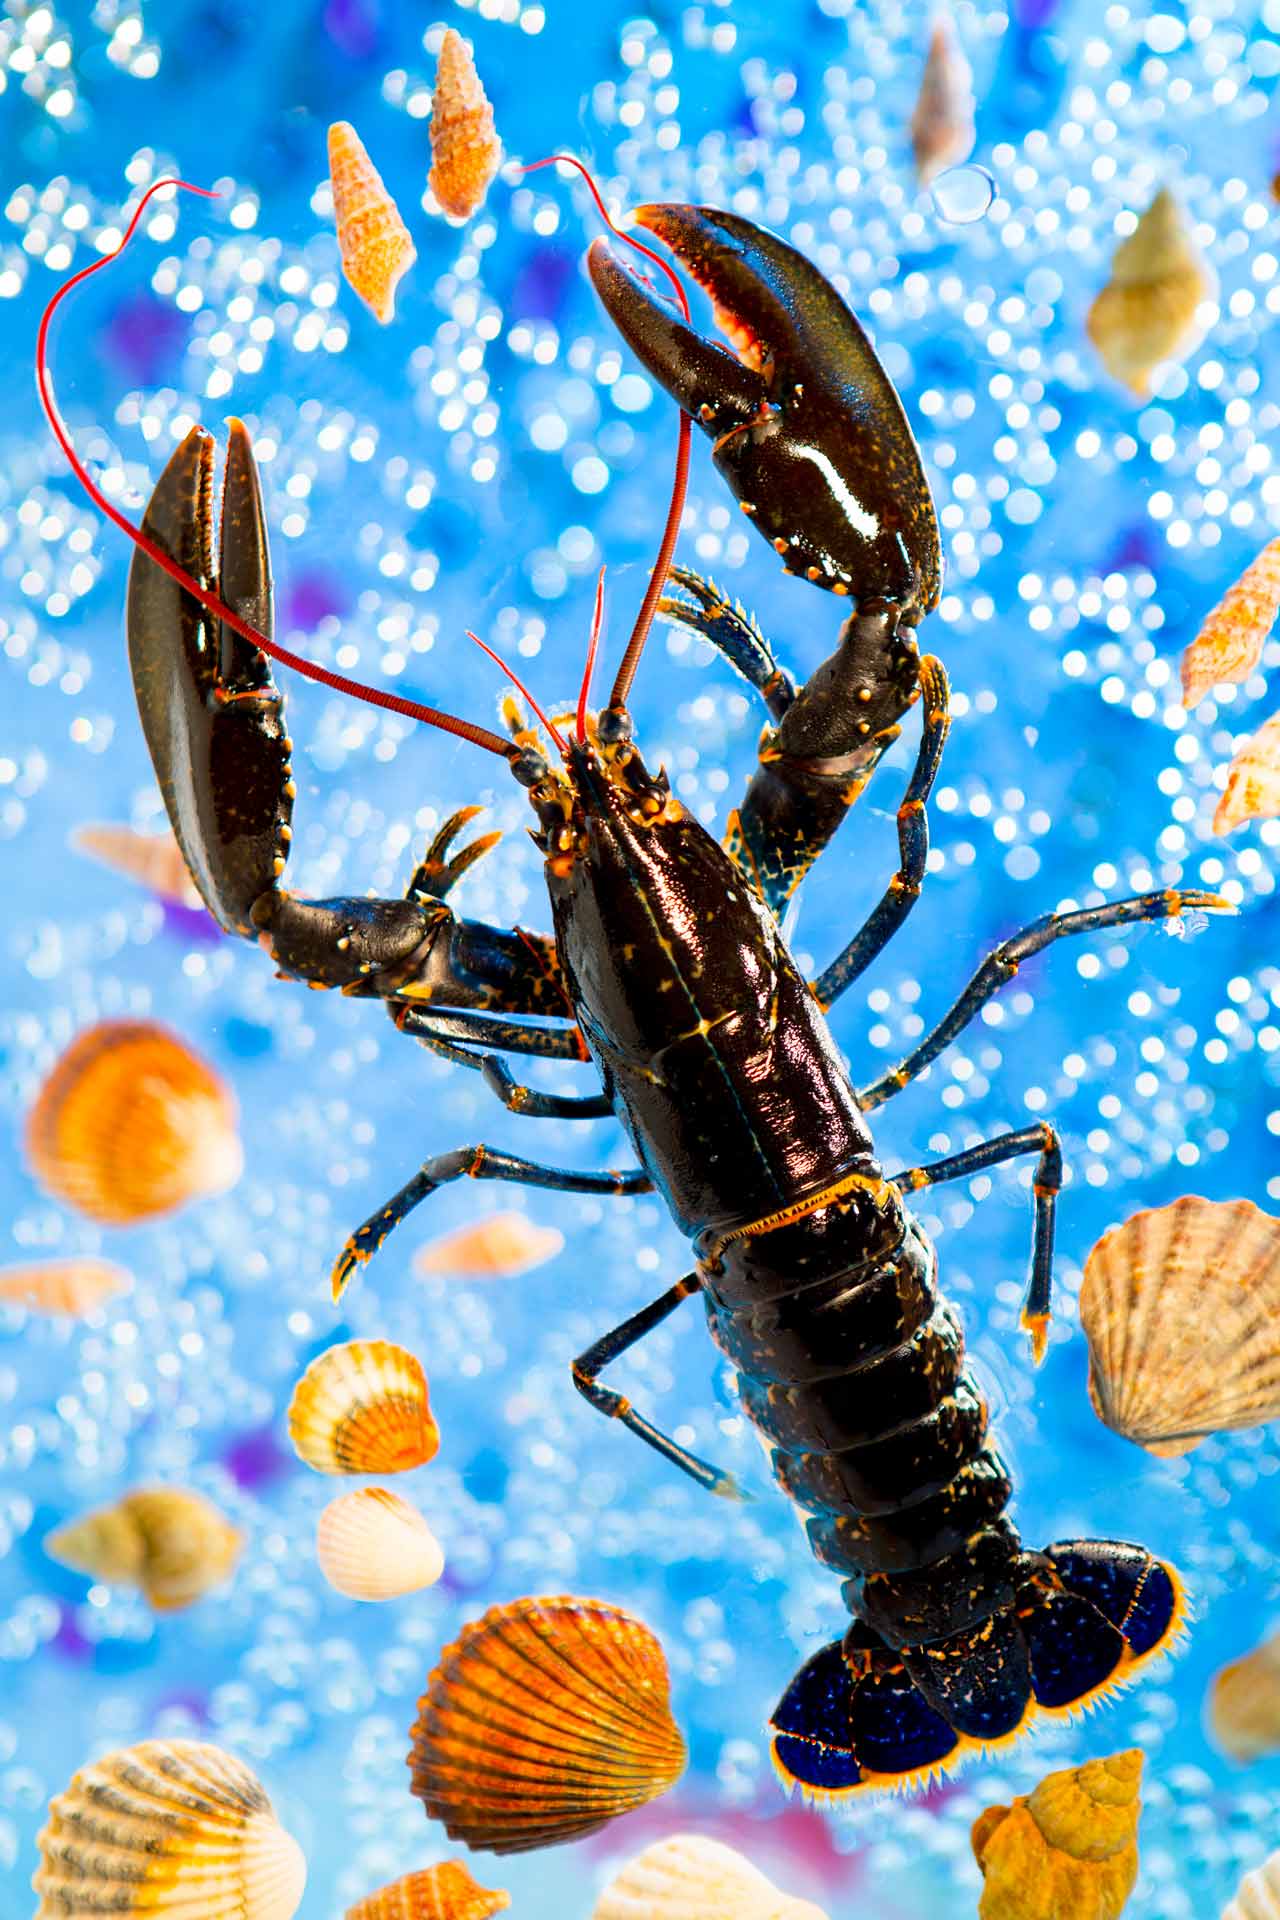 La fête au homard - Prise de vue réalisée en studio photo professionnel à Strasbourg